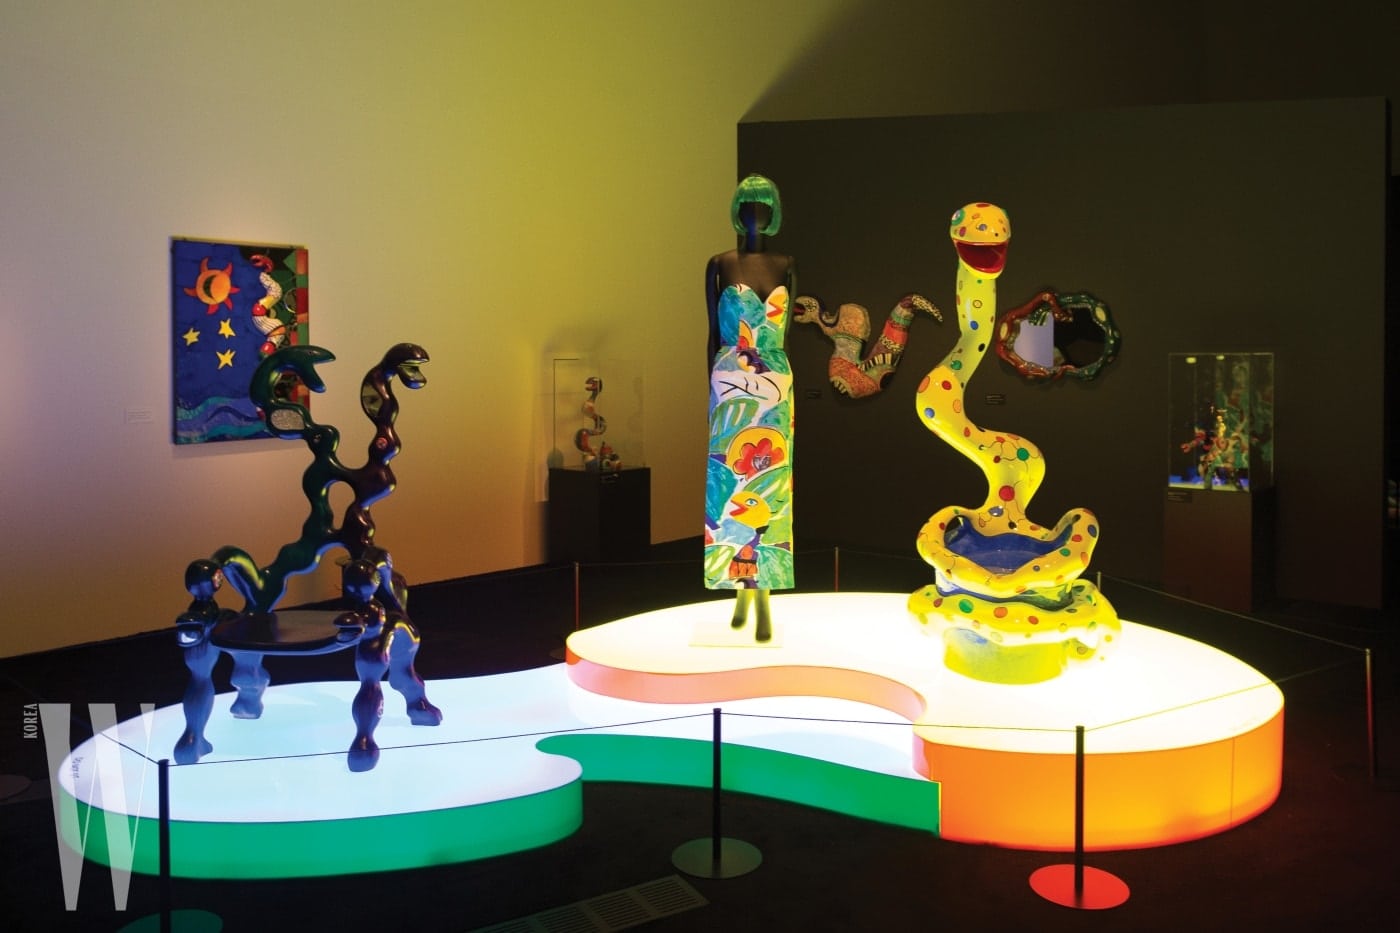 뱀과 관련한 다채로운 소재의 작품들이 전시된 방.